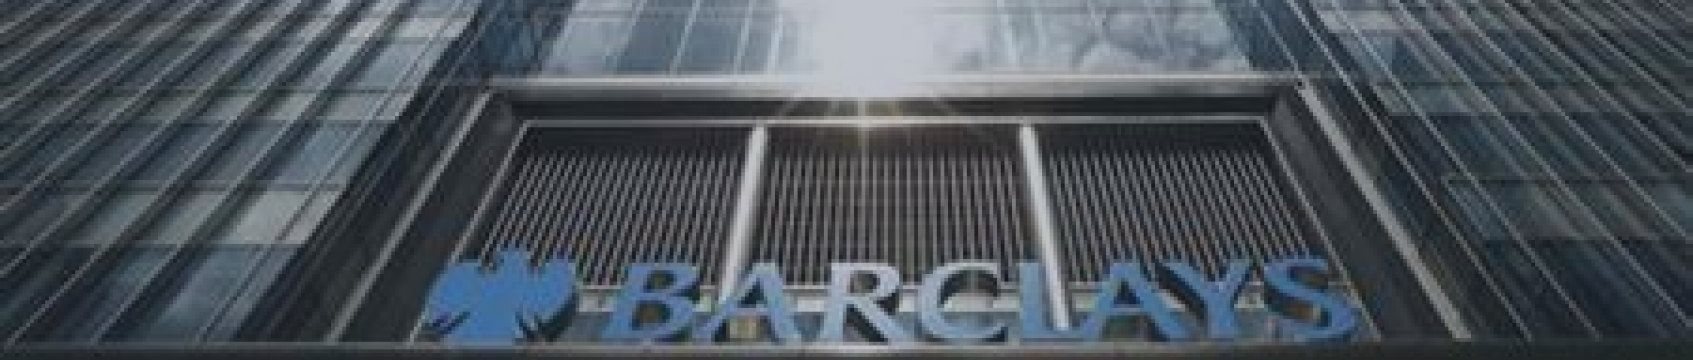 Британский банк Barclays дурачил инвесторов: предъявлено обвинение